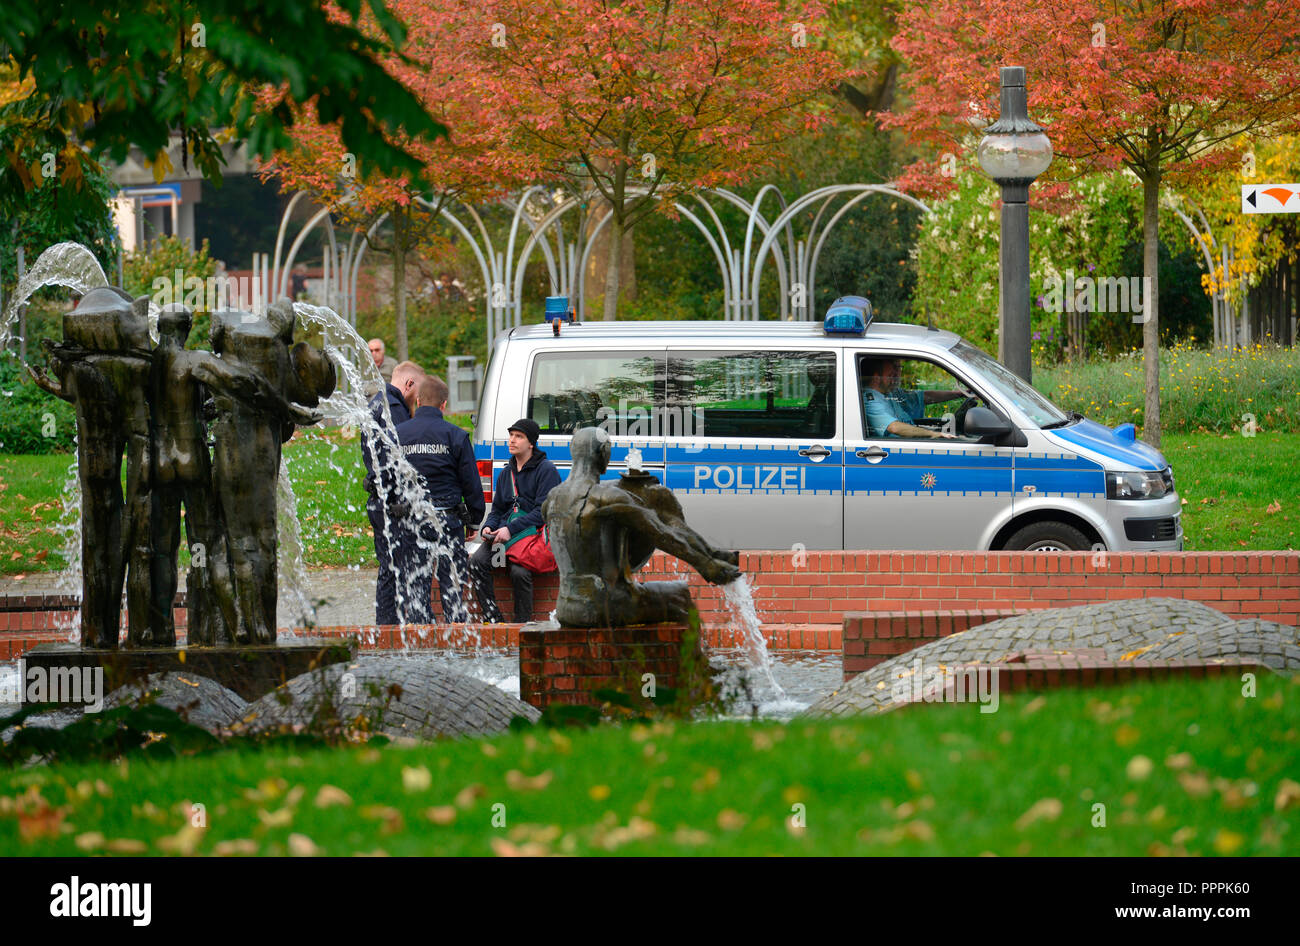 Polizei, Stadtgarten, Dortmund, Nordrhein-Westfalen, Deutschland Stock Photo